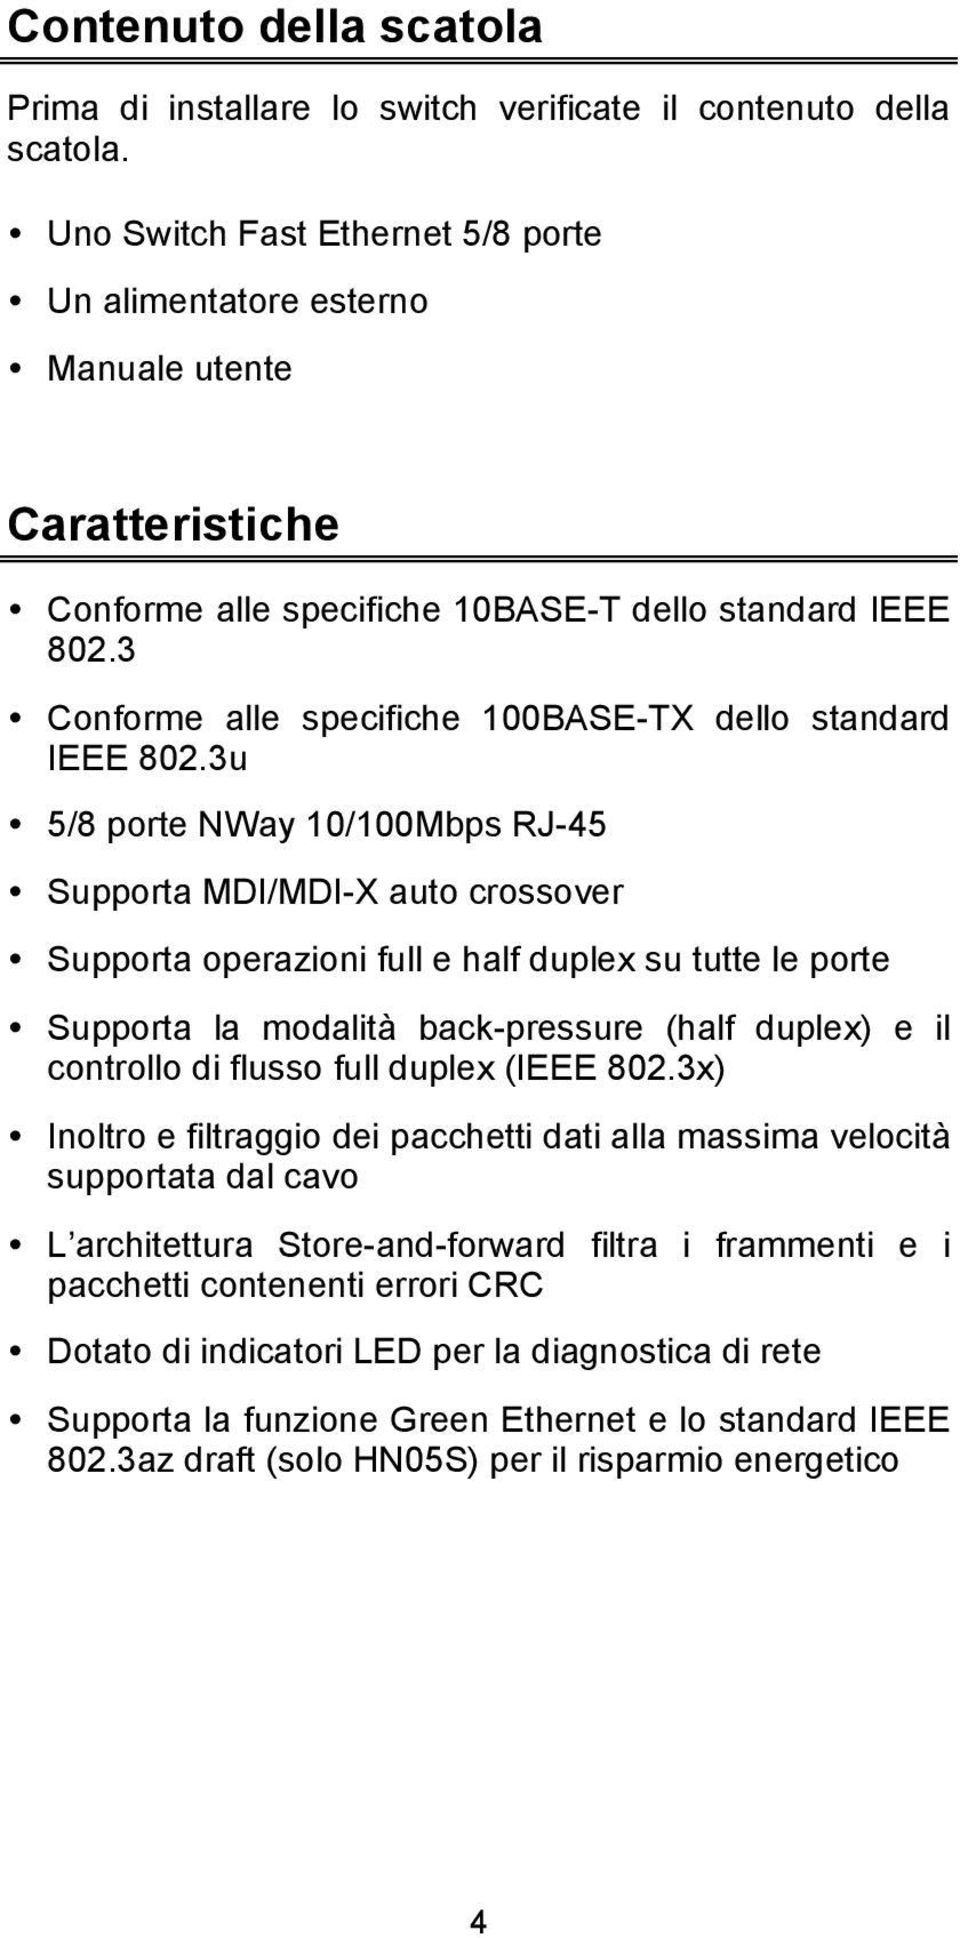 3 Conforme alle specifiche 100BASE-TX dello standard IEEE 802.